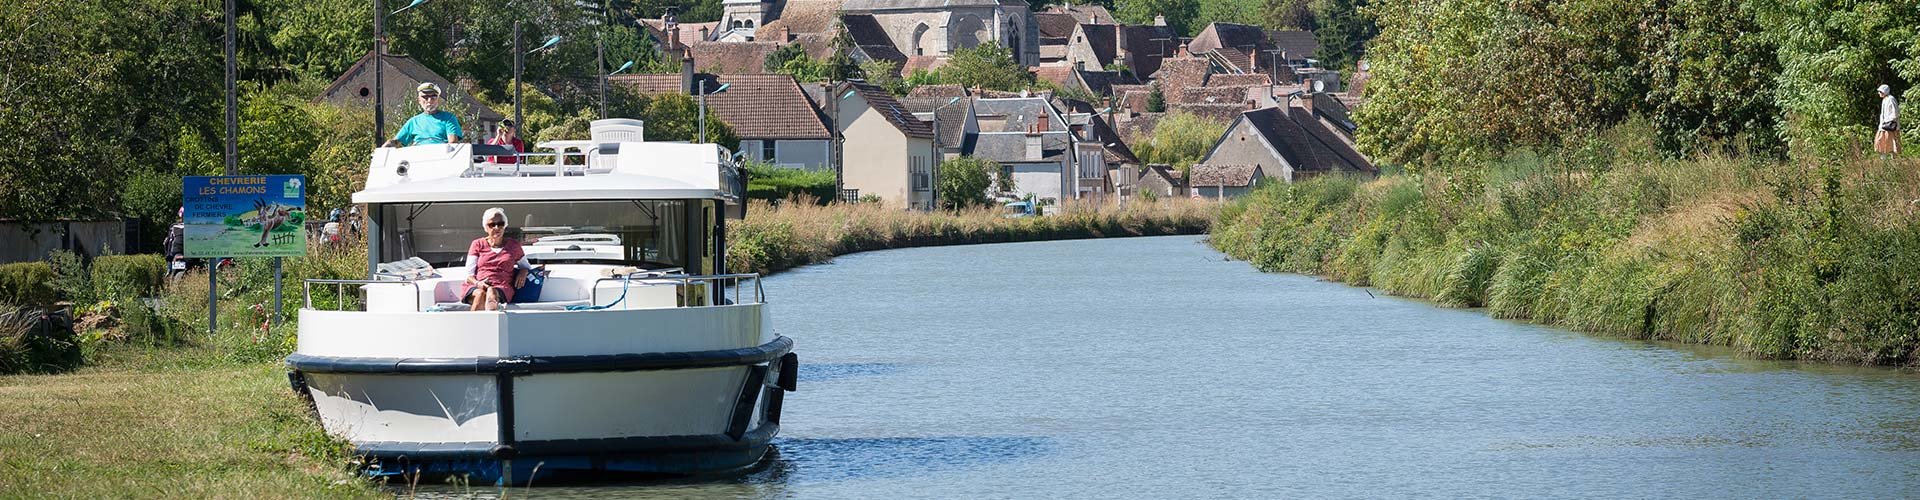 Bootverhuur zonder vaarbewijs in Bourgondië